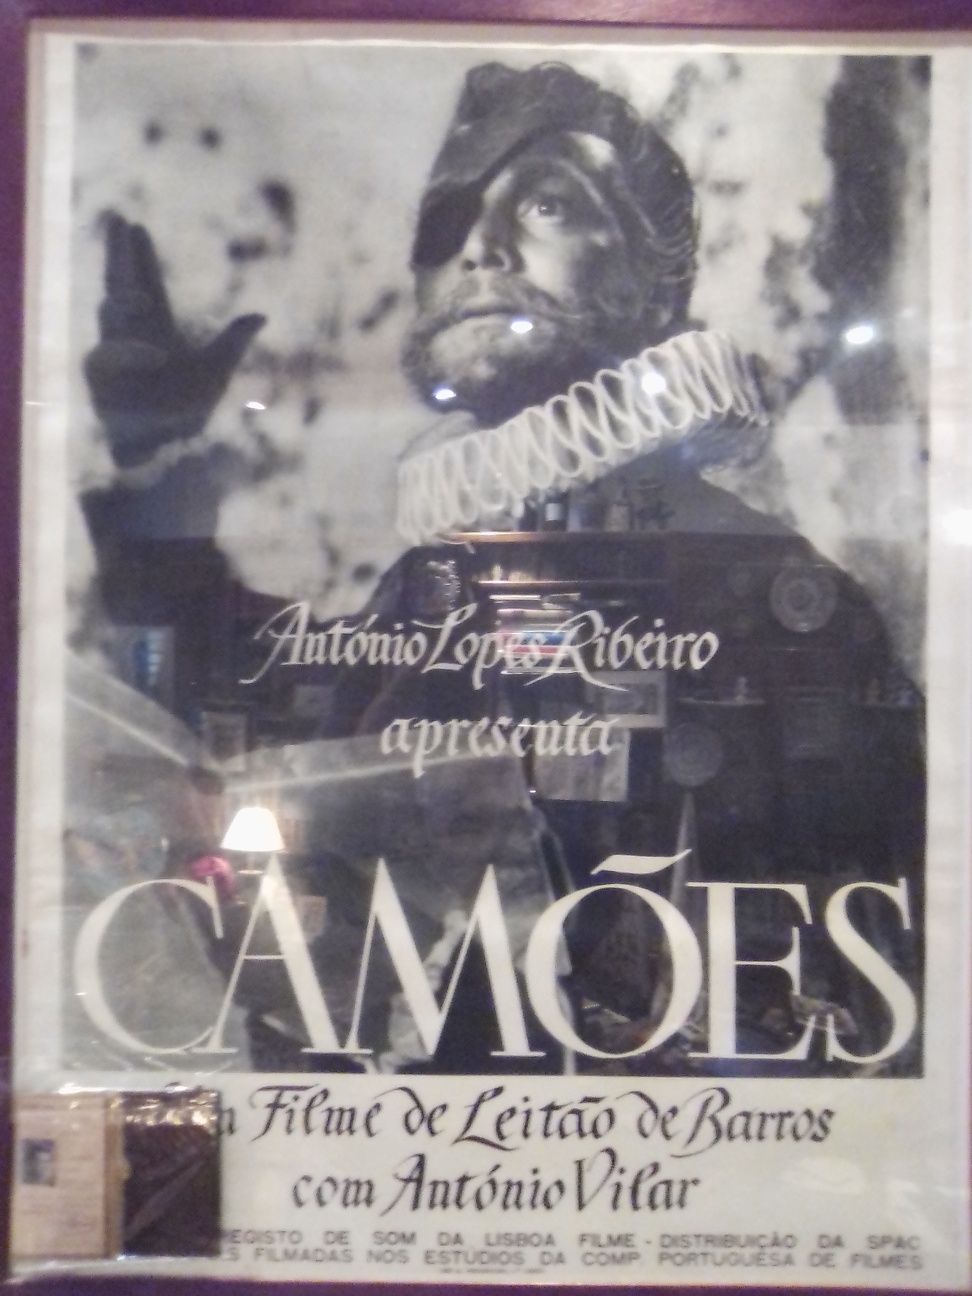 Cinema Portugues, Cartaz do filme Camoes